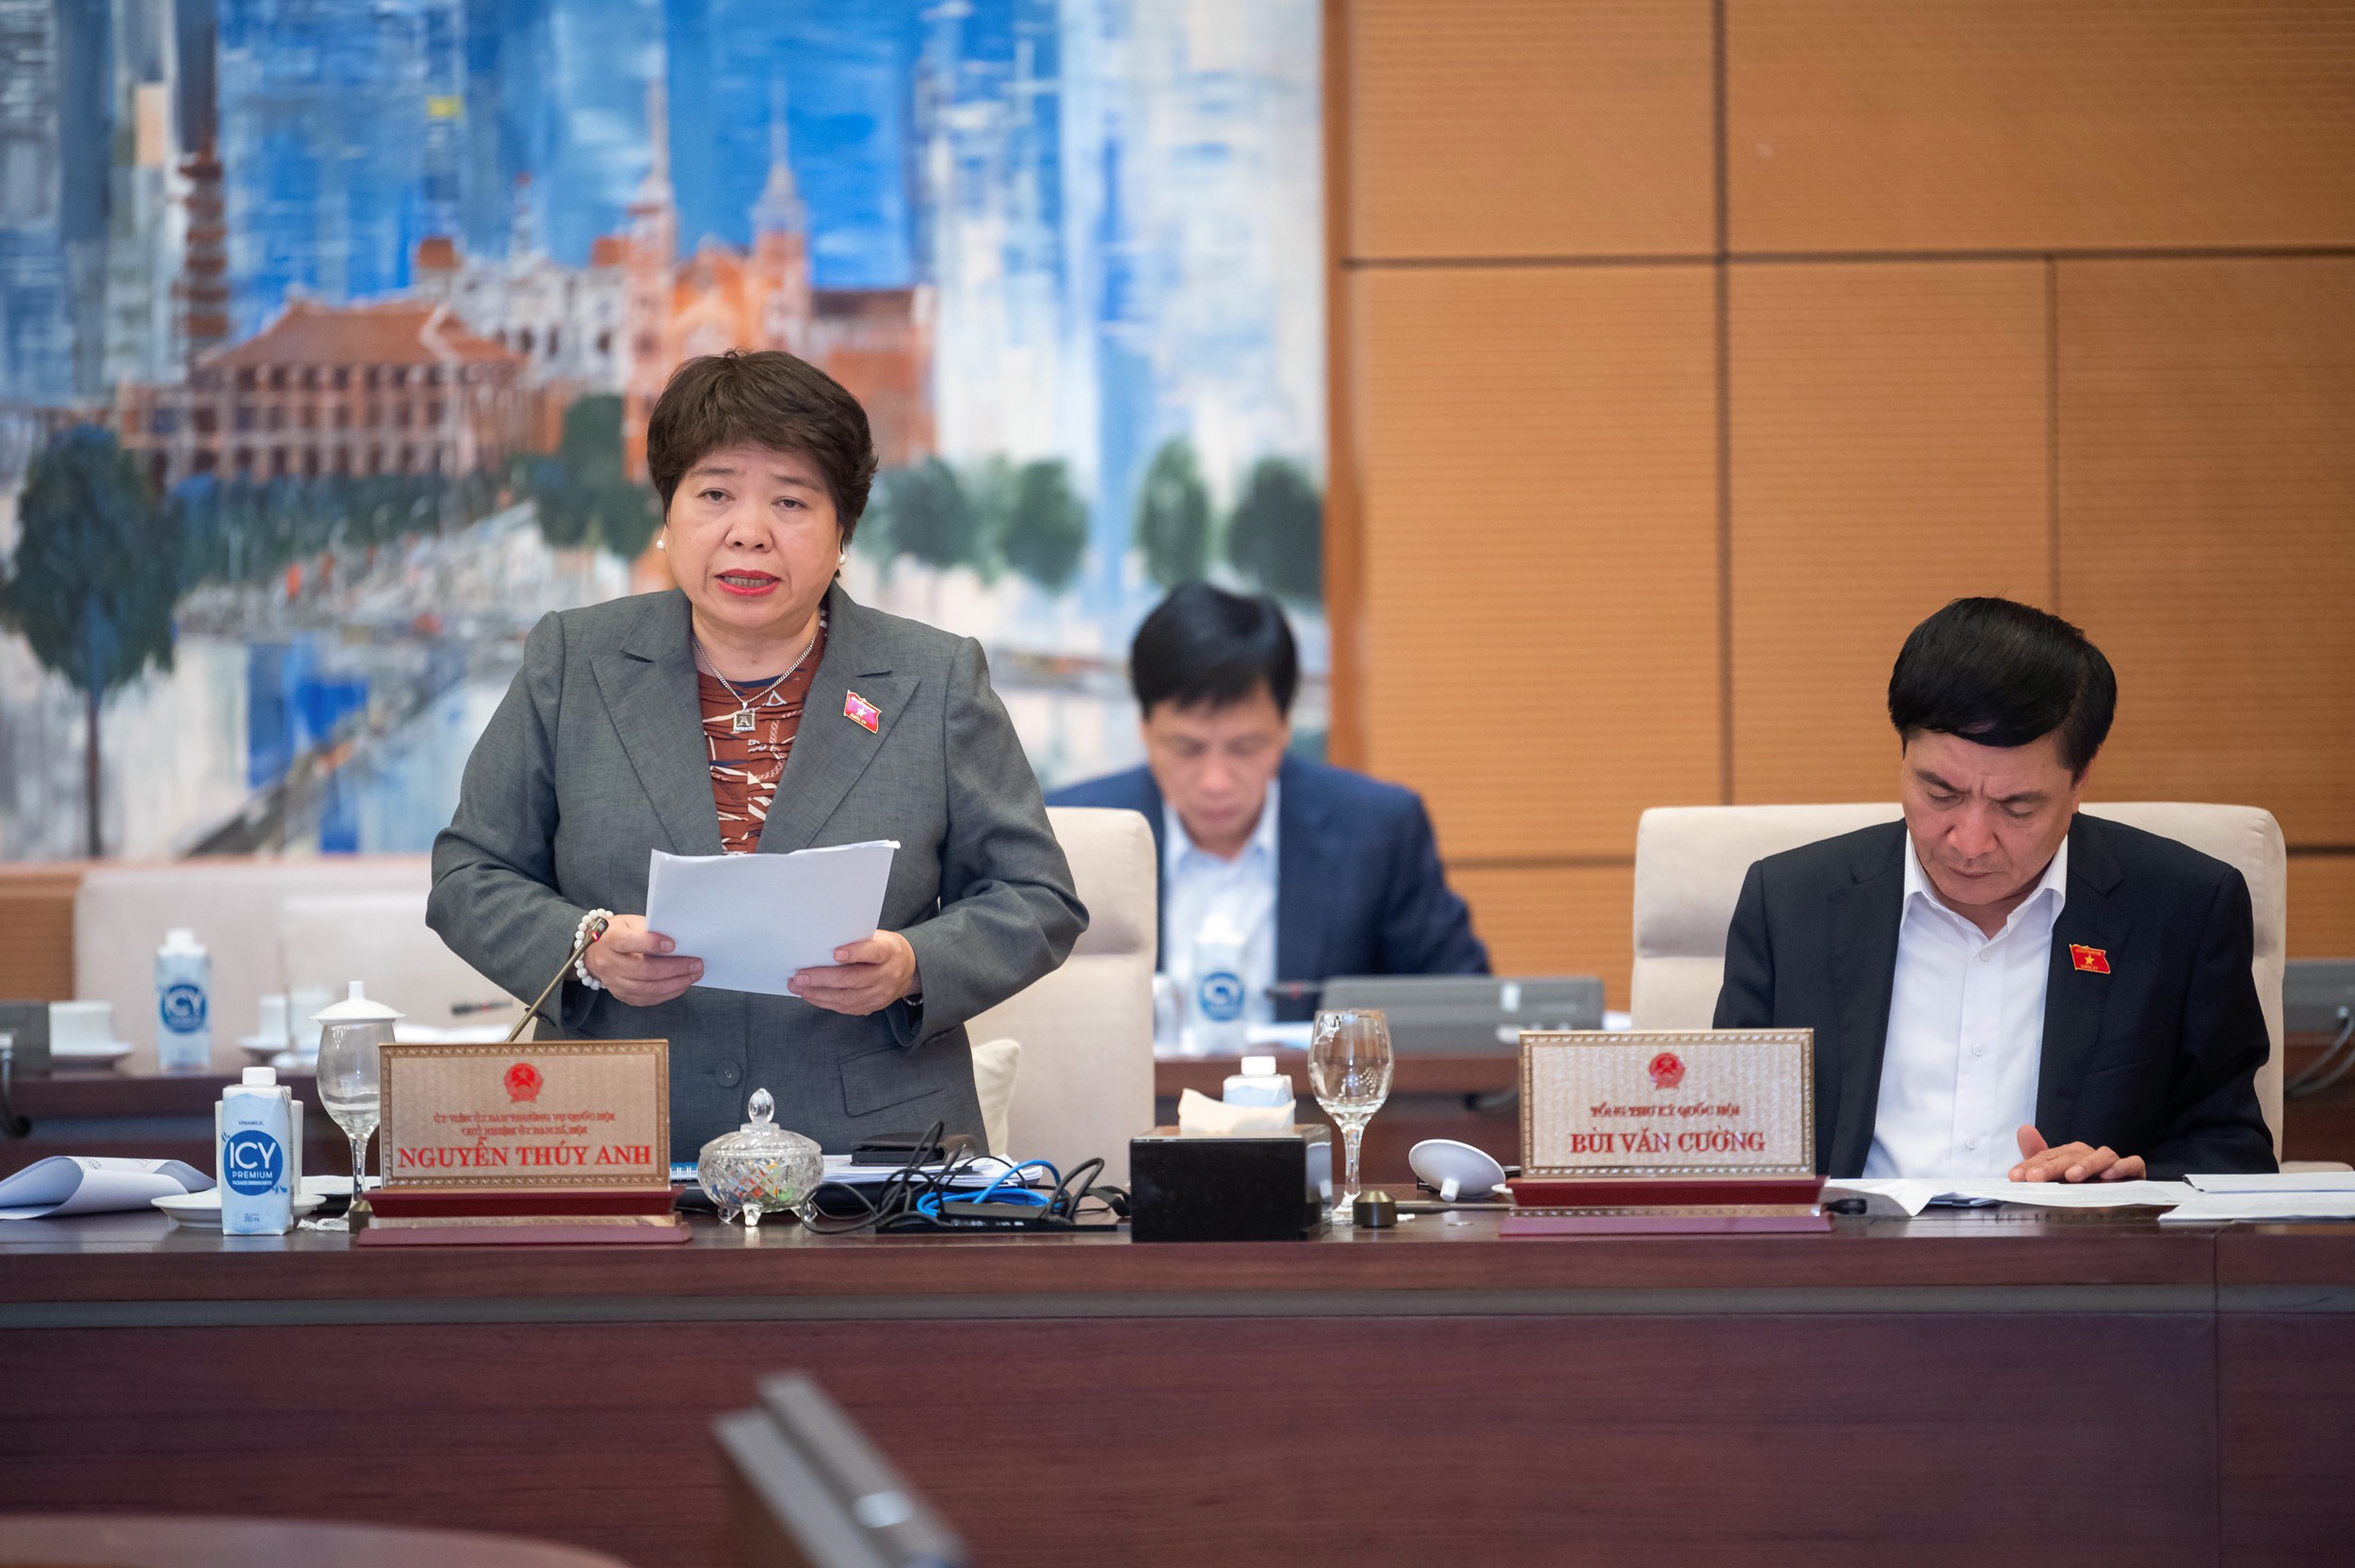 Ủy ban Thường vụ Quốc hội thông qua Nghị quyết về Kỷ niệm chương “Vì sự nghiệp Quốc hội Việt Nam” -0